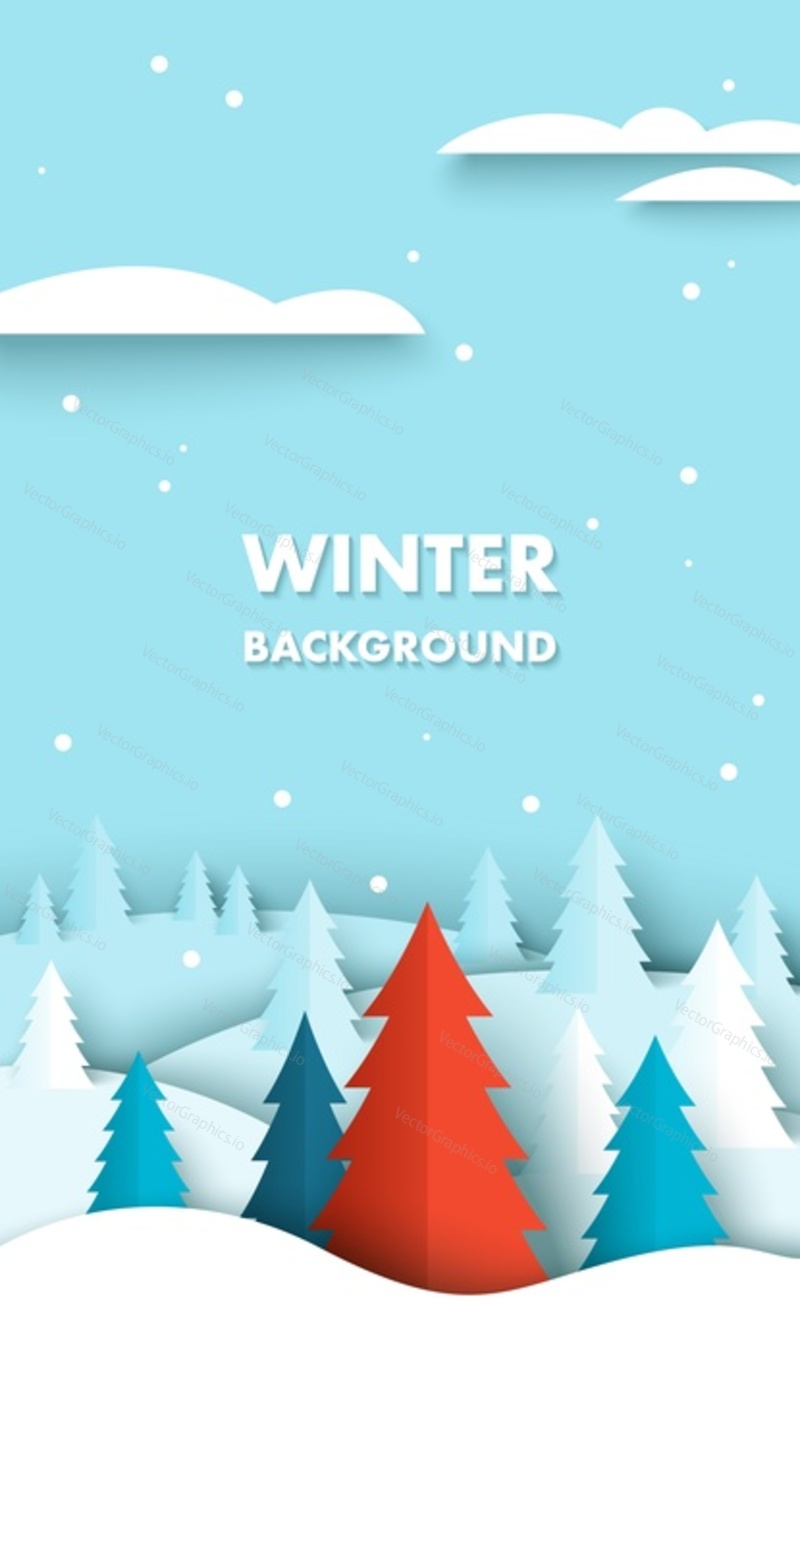 Зимний фон с векторной иллюстрацией хвойных деревьев в стиле оригами, вырезанном из бумаги. Бело-сине-красный еловый лес под 3d-дизайном снегопада. Концепция рождественских и новогодних праздников